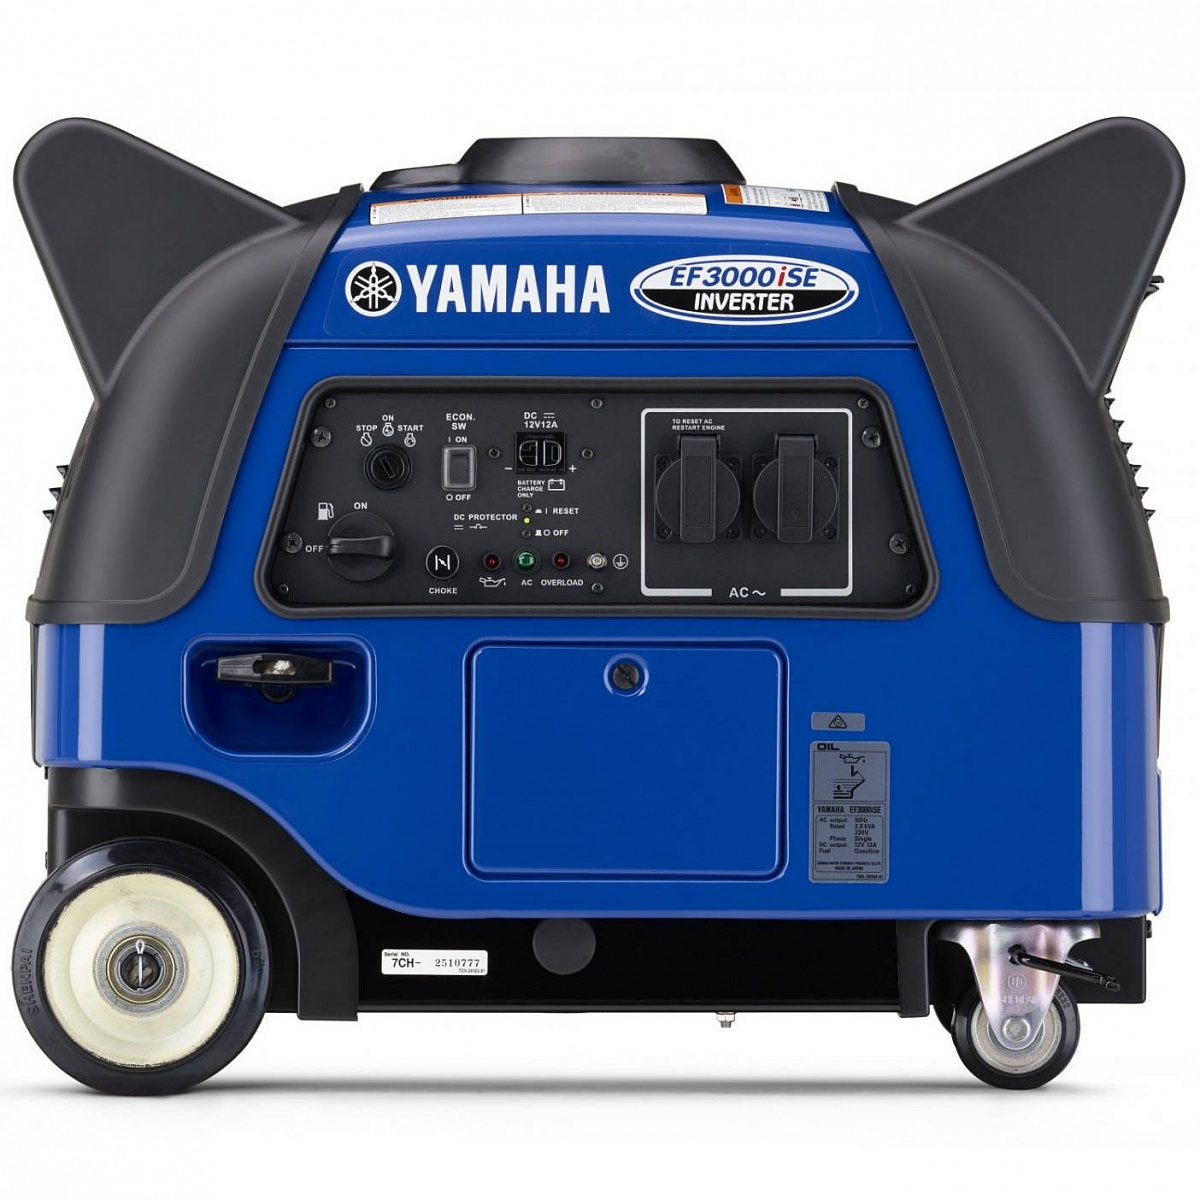 Купить генератор ямаха. Генератор Yamaha ef3000ise. Генератор Yamaha 3000. Генератор бензиновый Ямаха 2 КВТ. Бензогенератор Ямаха ef3000ise.